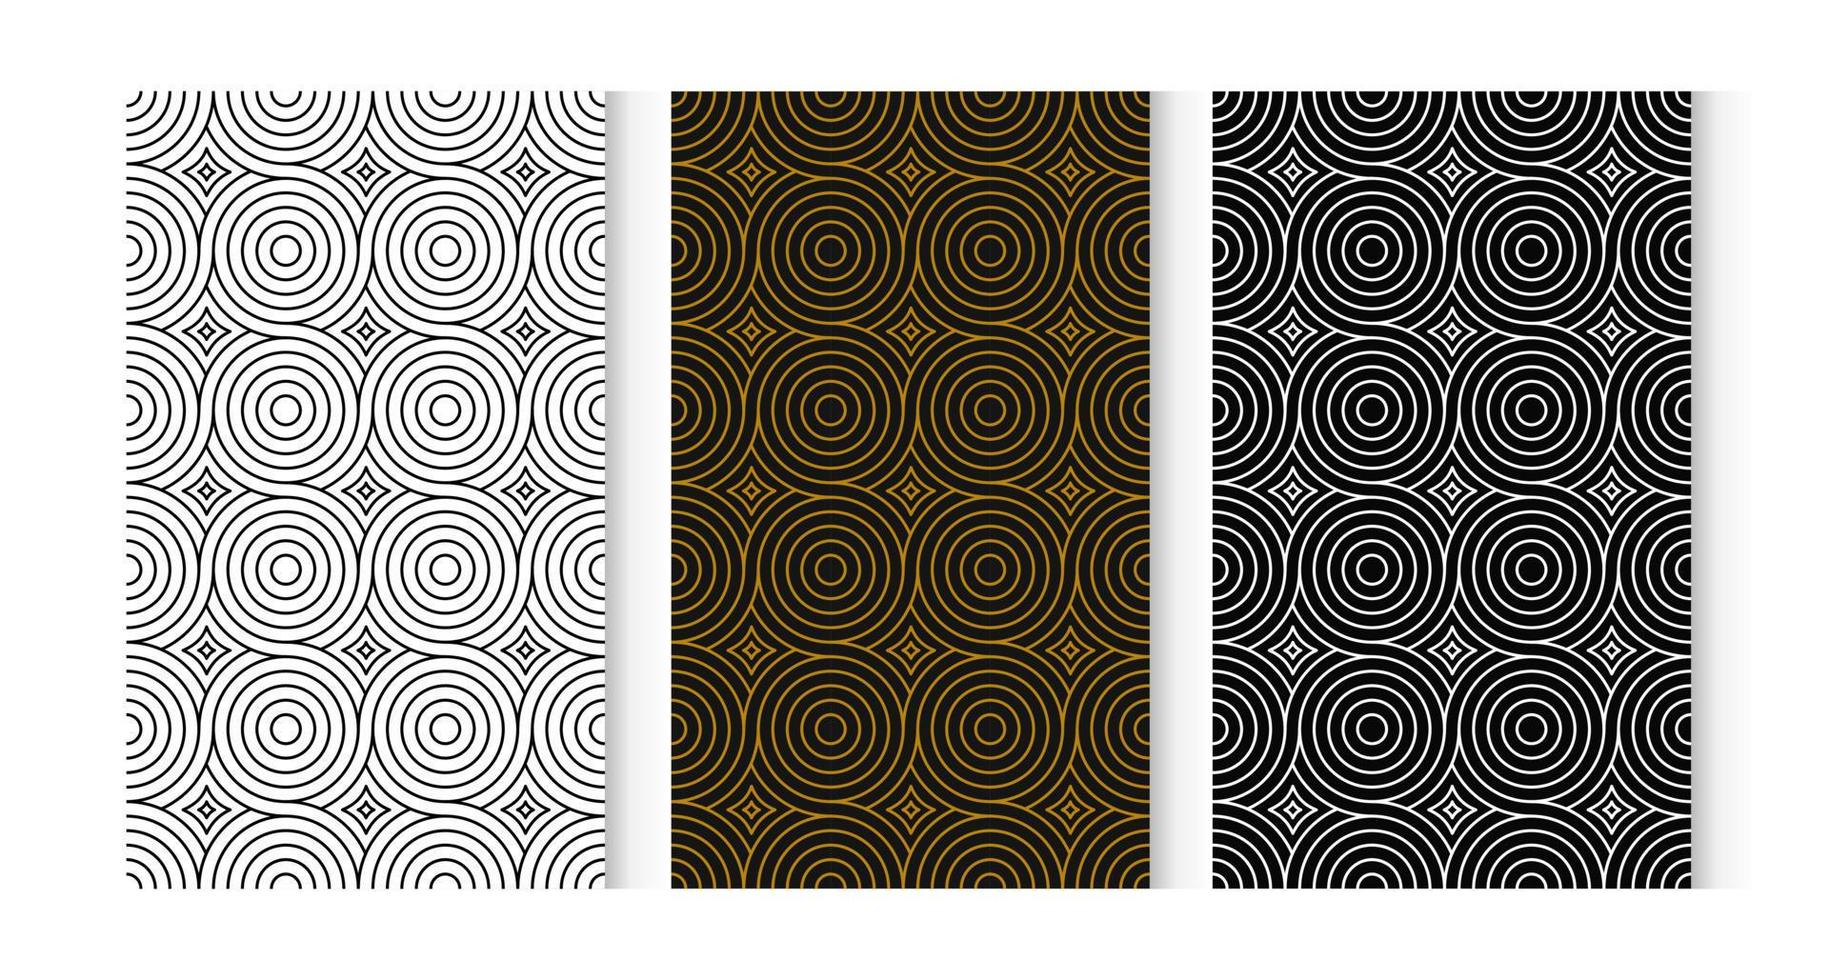 sömlös mönster cirkel 3 stilar. vit, brun, svart. vektor